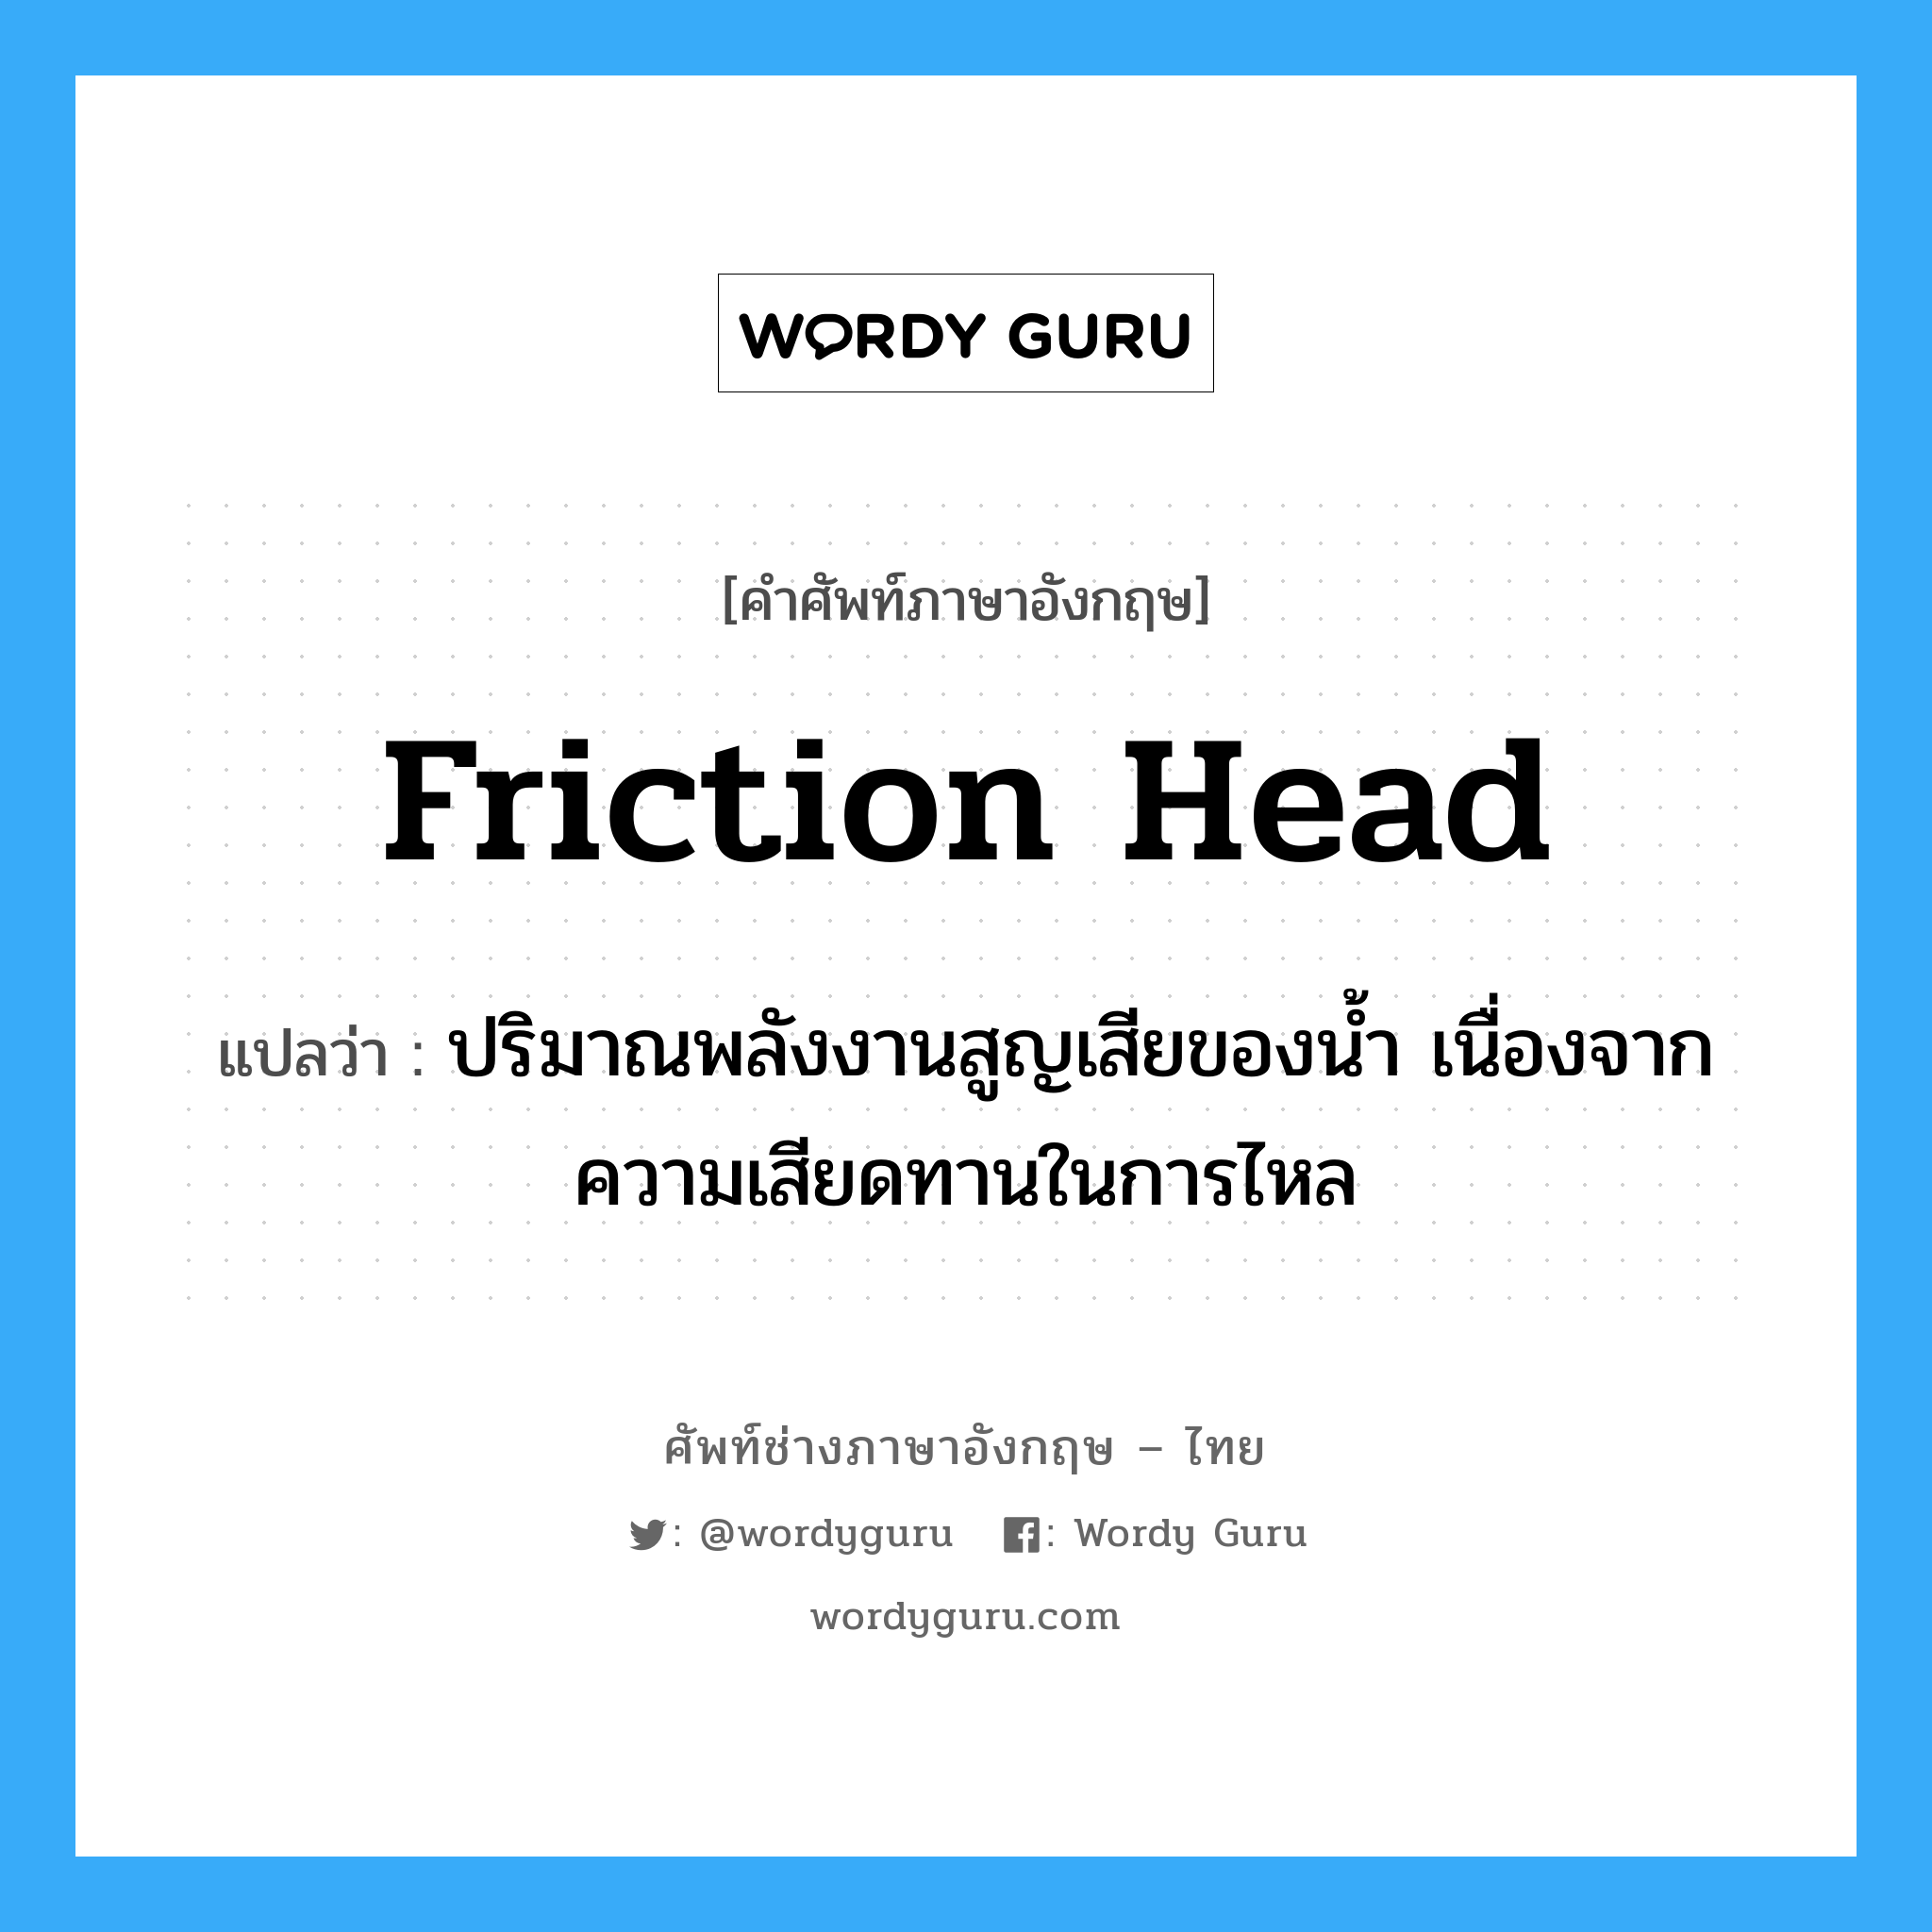 friction head แปลว่า?, คำศัพท์ช่างภาษาอังกฤษ - ไทย friction head คำศัพท์ภาษาอังกฤษ friction head แปลว่า ปริมาณพลังงานสูญเสียของน้ำ เนื่องจากความเสียดทานในการไหล